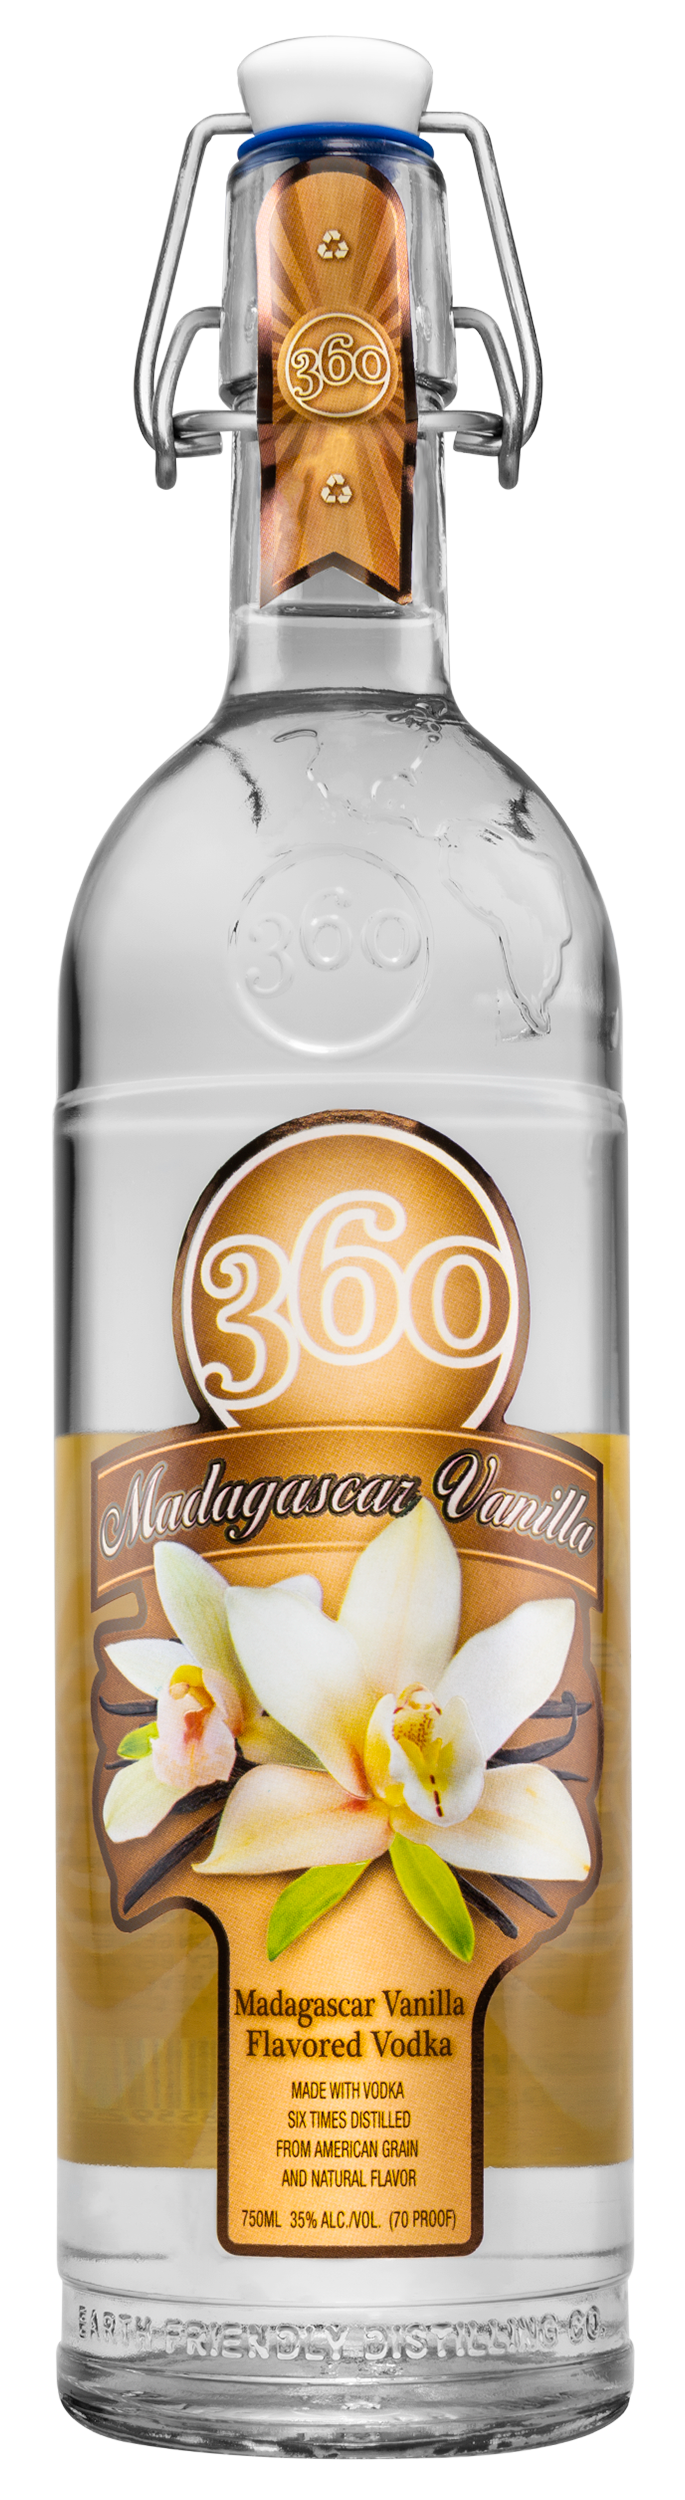 360 Madagascar Vanilla Flavored Vodka | 360 Eco-Friendly Vodka | Gin